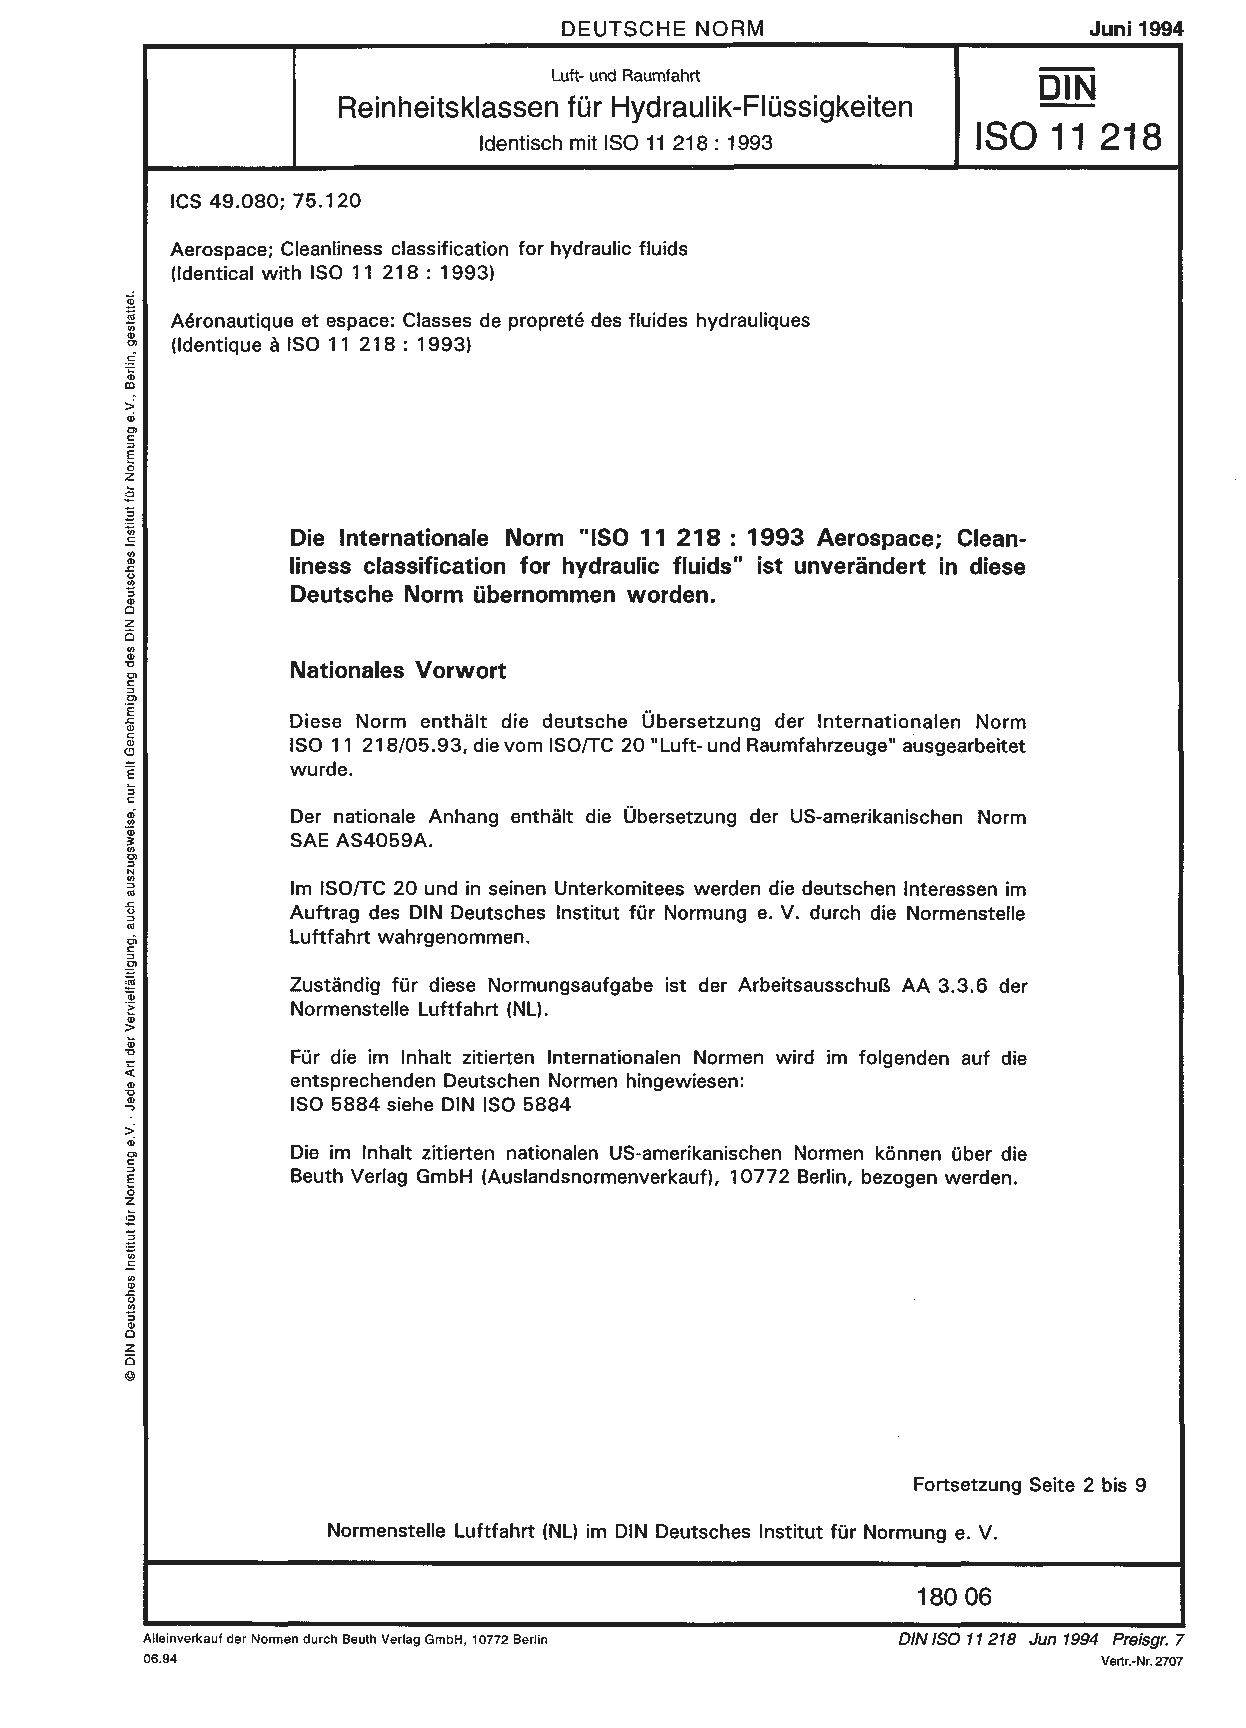 DIN ISO 11218:1994封面图